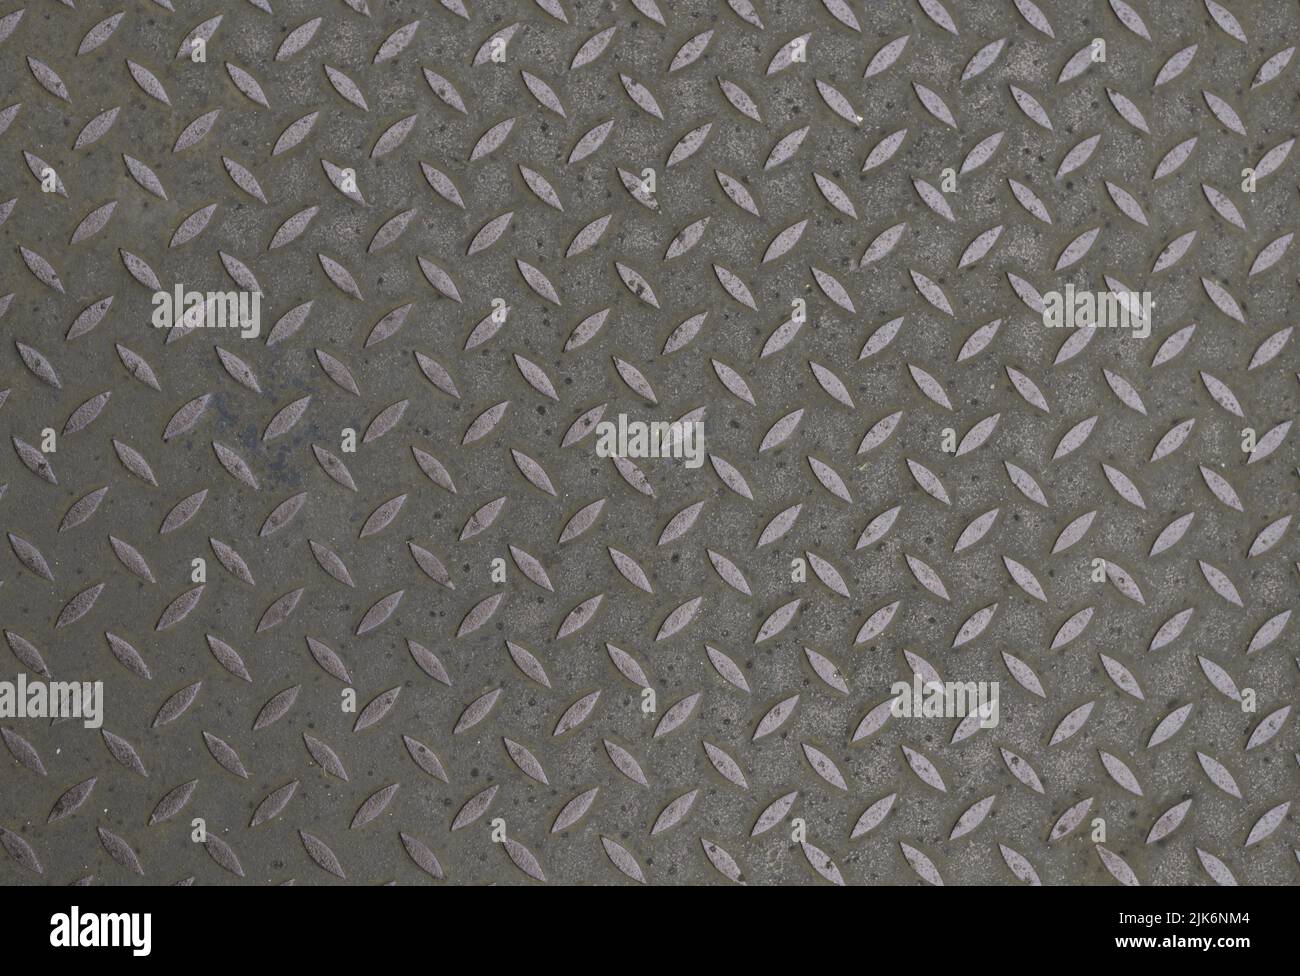 Material De Chapa De Aluminio Textura De Fondo De Chapa Metálica Foto de  stock y más banco de imágenes de A cuadros - iStock